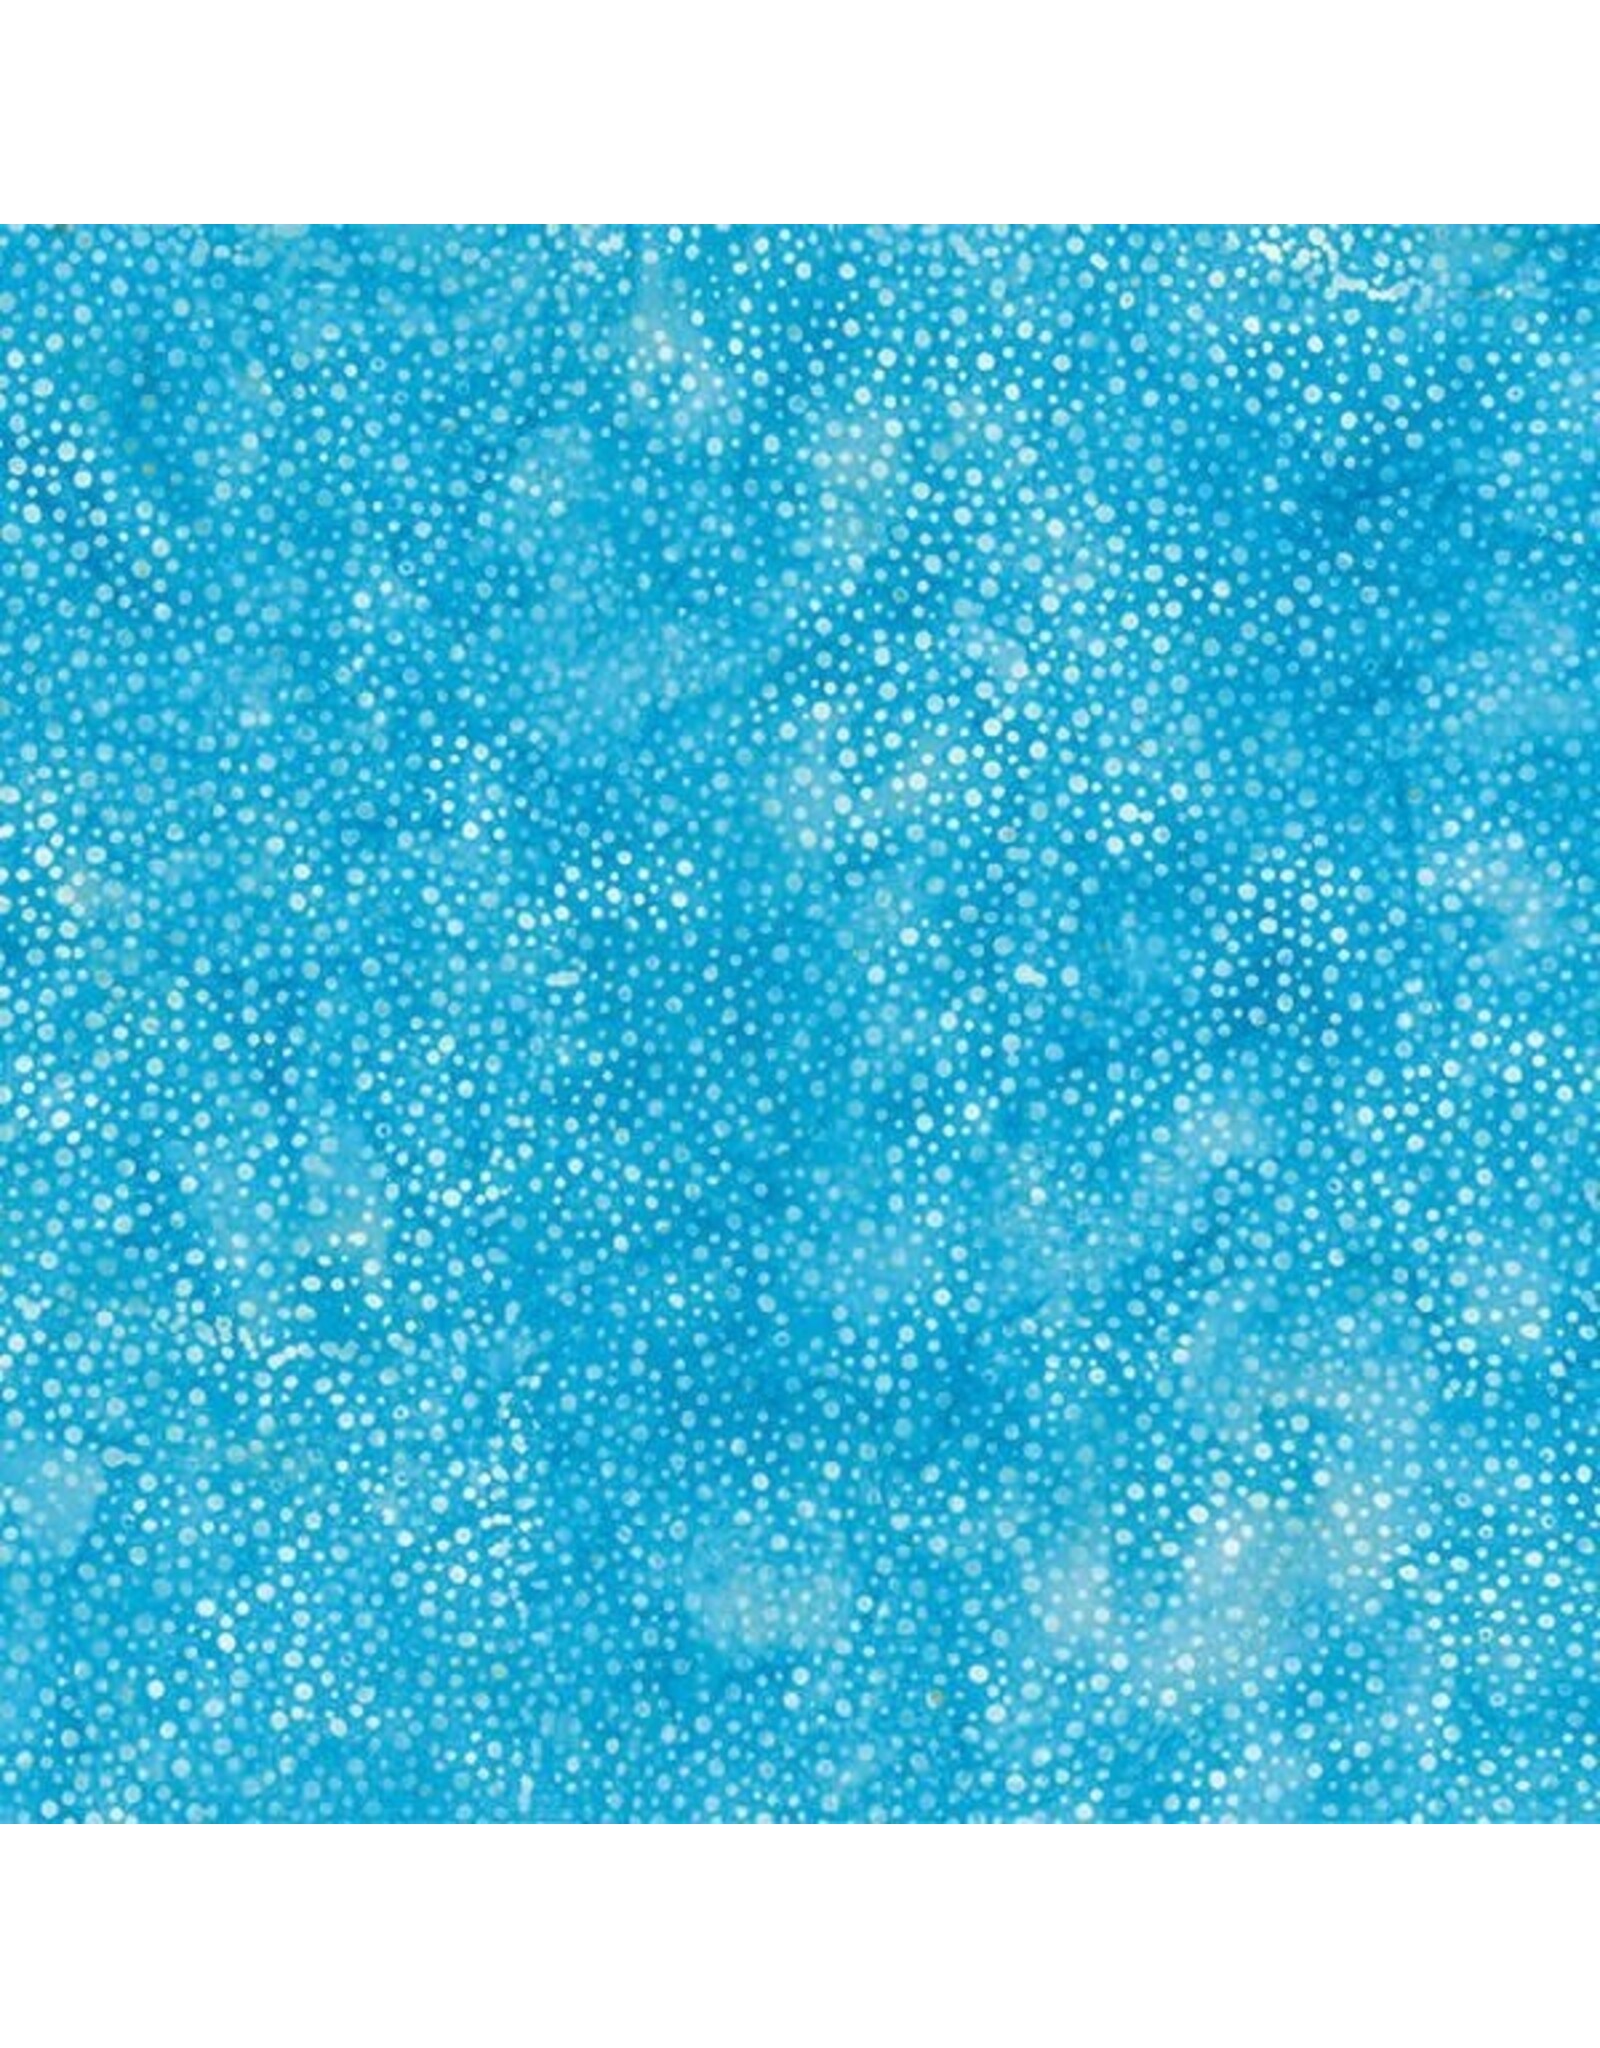 Hoffman Bali Dots - Cabana coupon (± 59 x 110 cm)